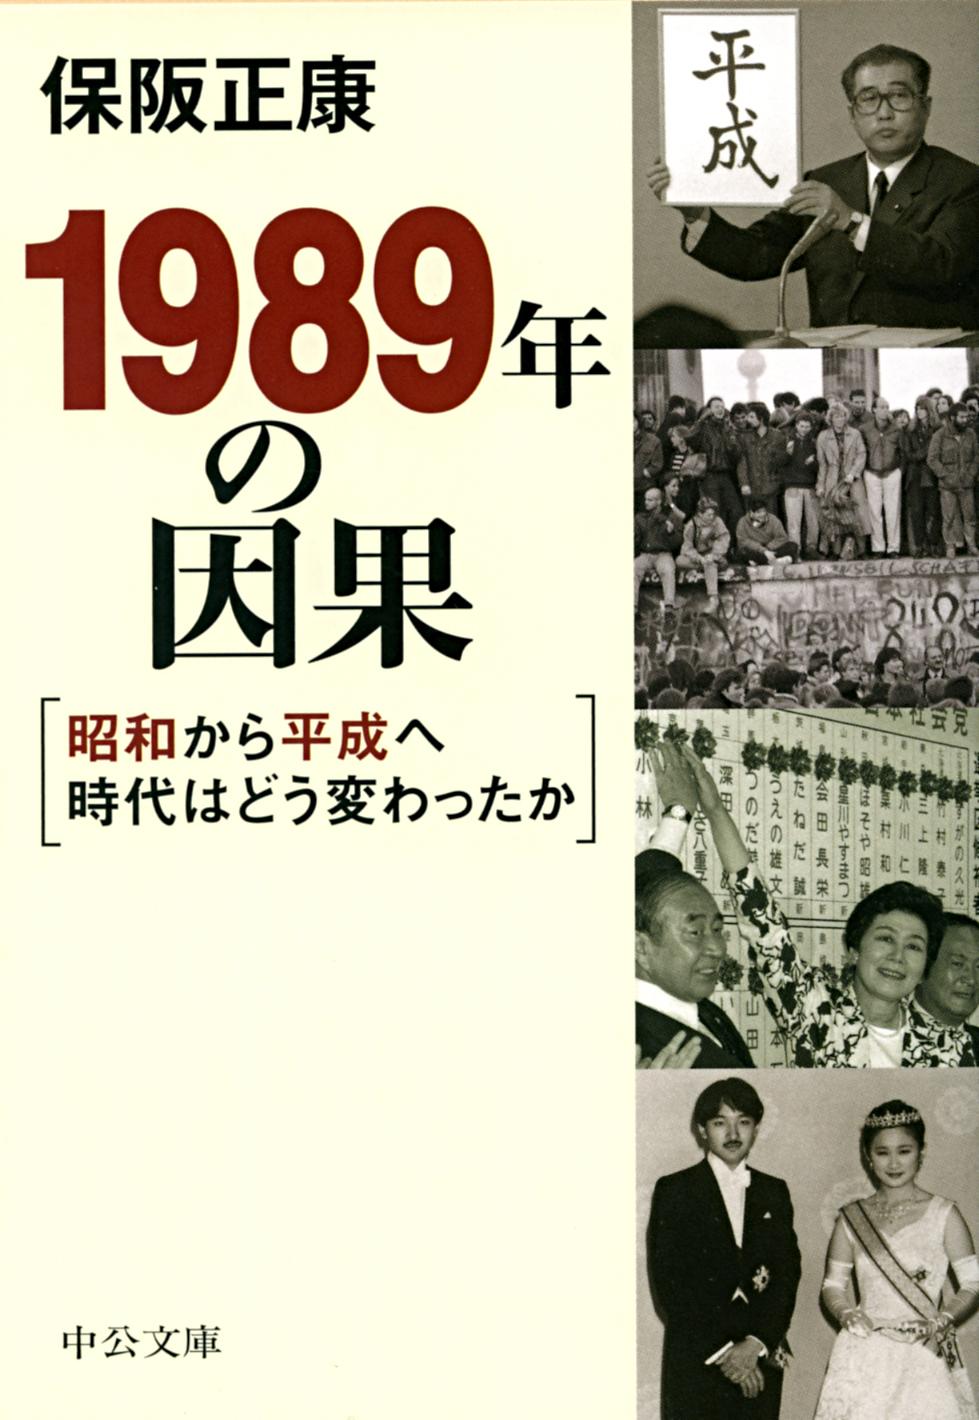 １９８９年の因果　昭和から平成へ時代はどう変わったか